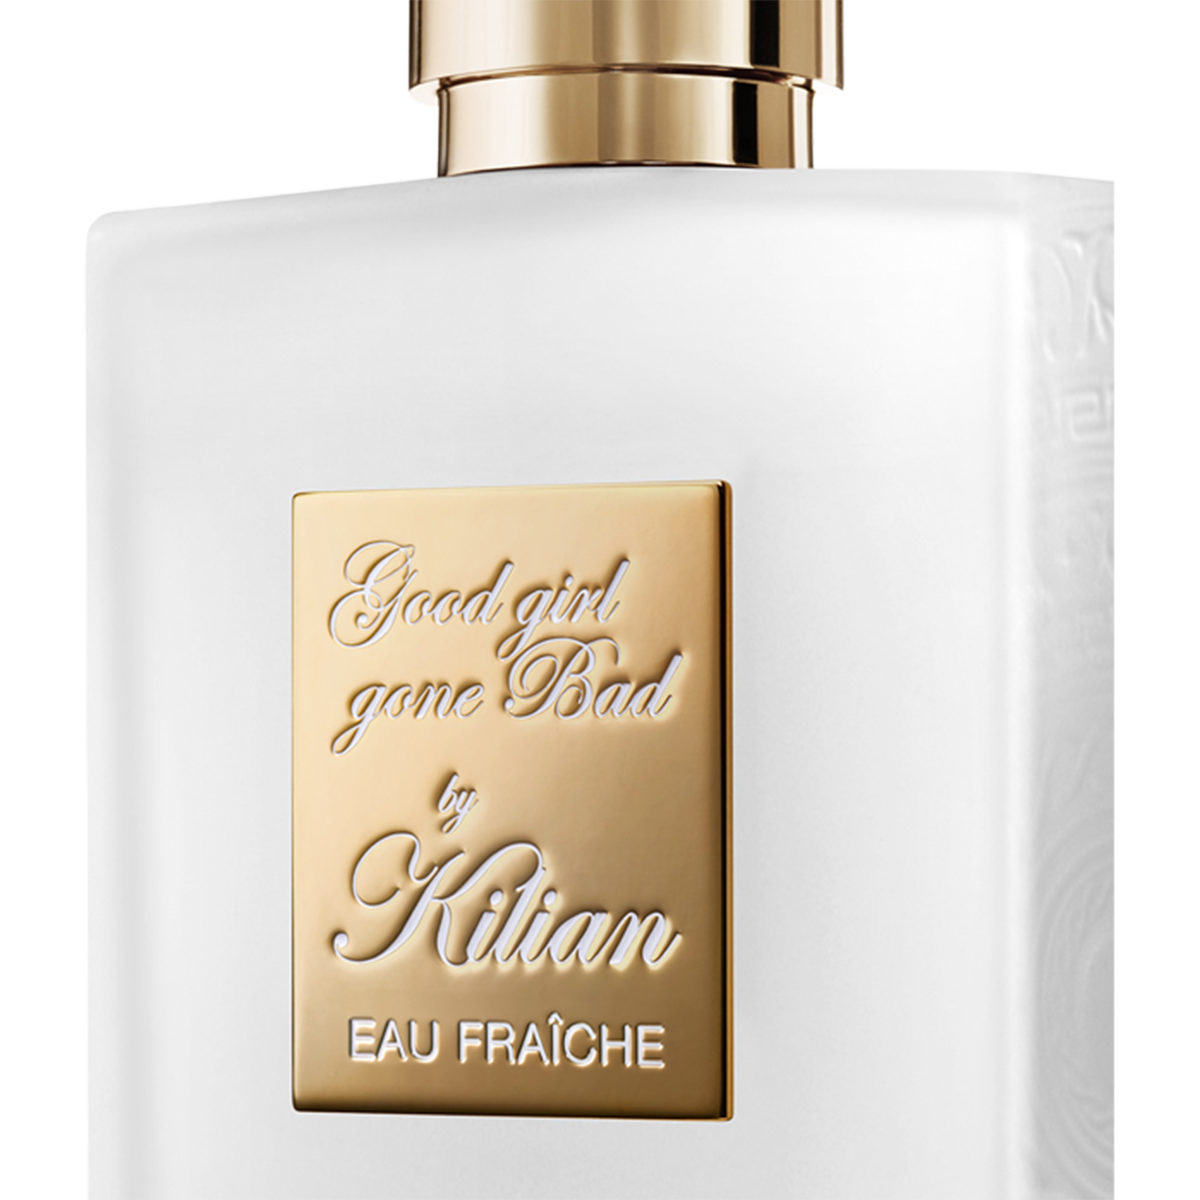 Kilian Paris - Good Girl Gone Bad Eau Fraiche